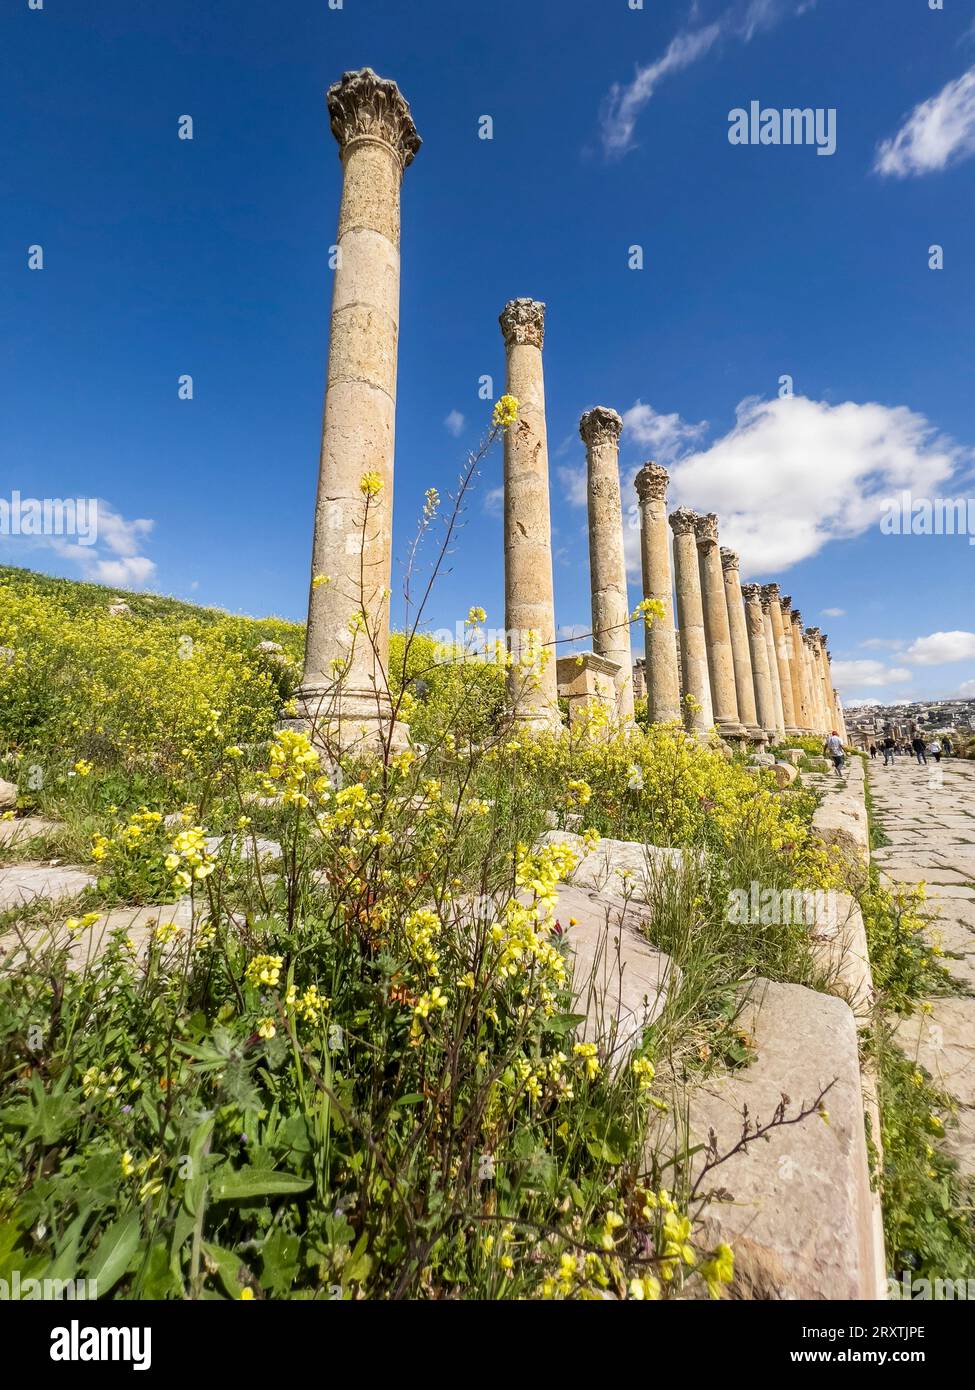 Fleurs devant des colonnes dans l'ancienne ville de Jerash, qui aurait été fondée en 331 av. J.-C. par Alexandre le Grand, Jerash, Jordanie, Moyen-Orient Banque D'Images